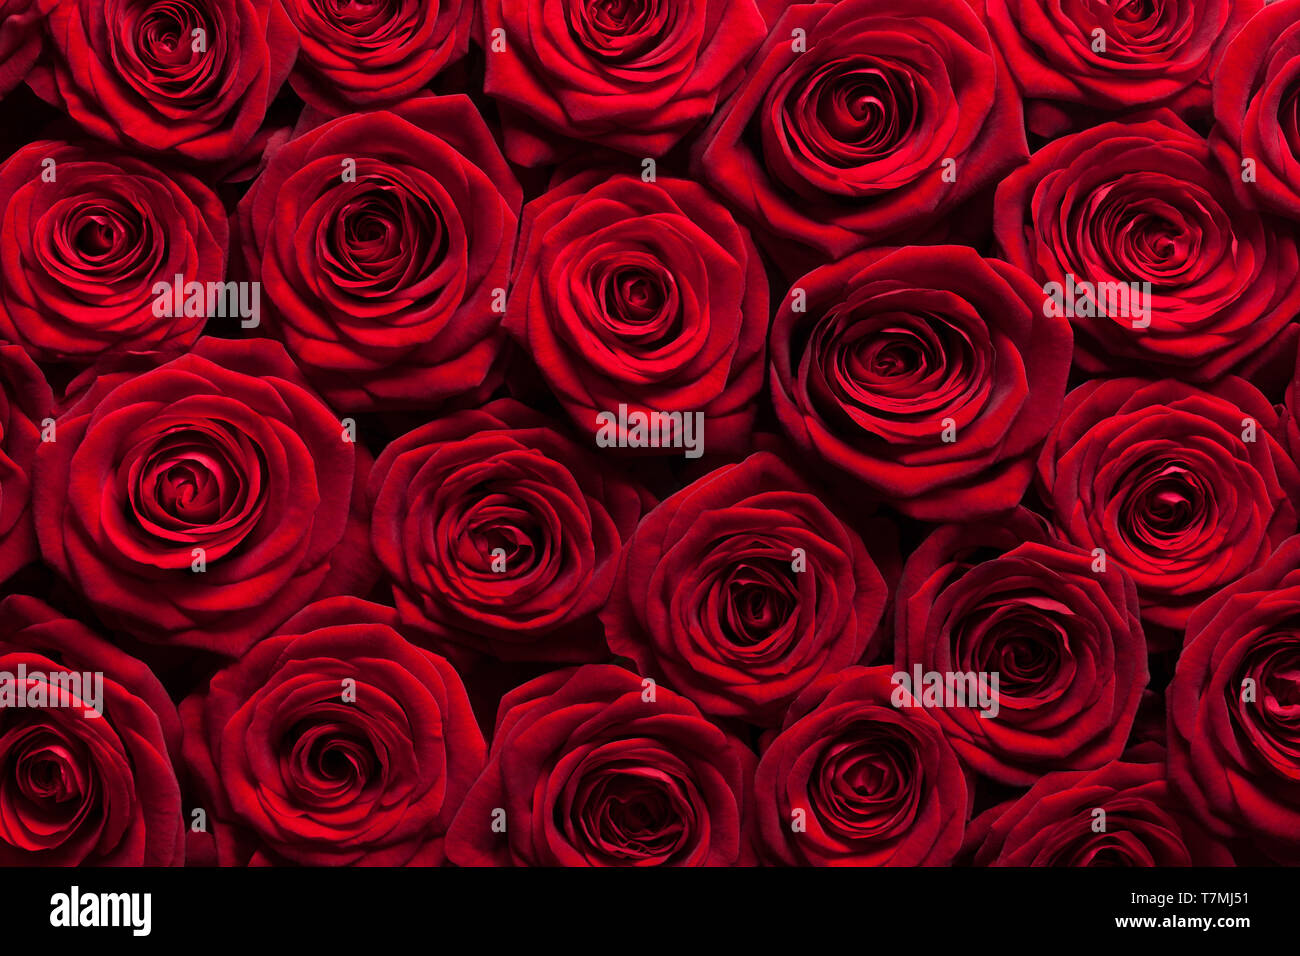 Arrière-plan de roses rouges Banque D'Images